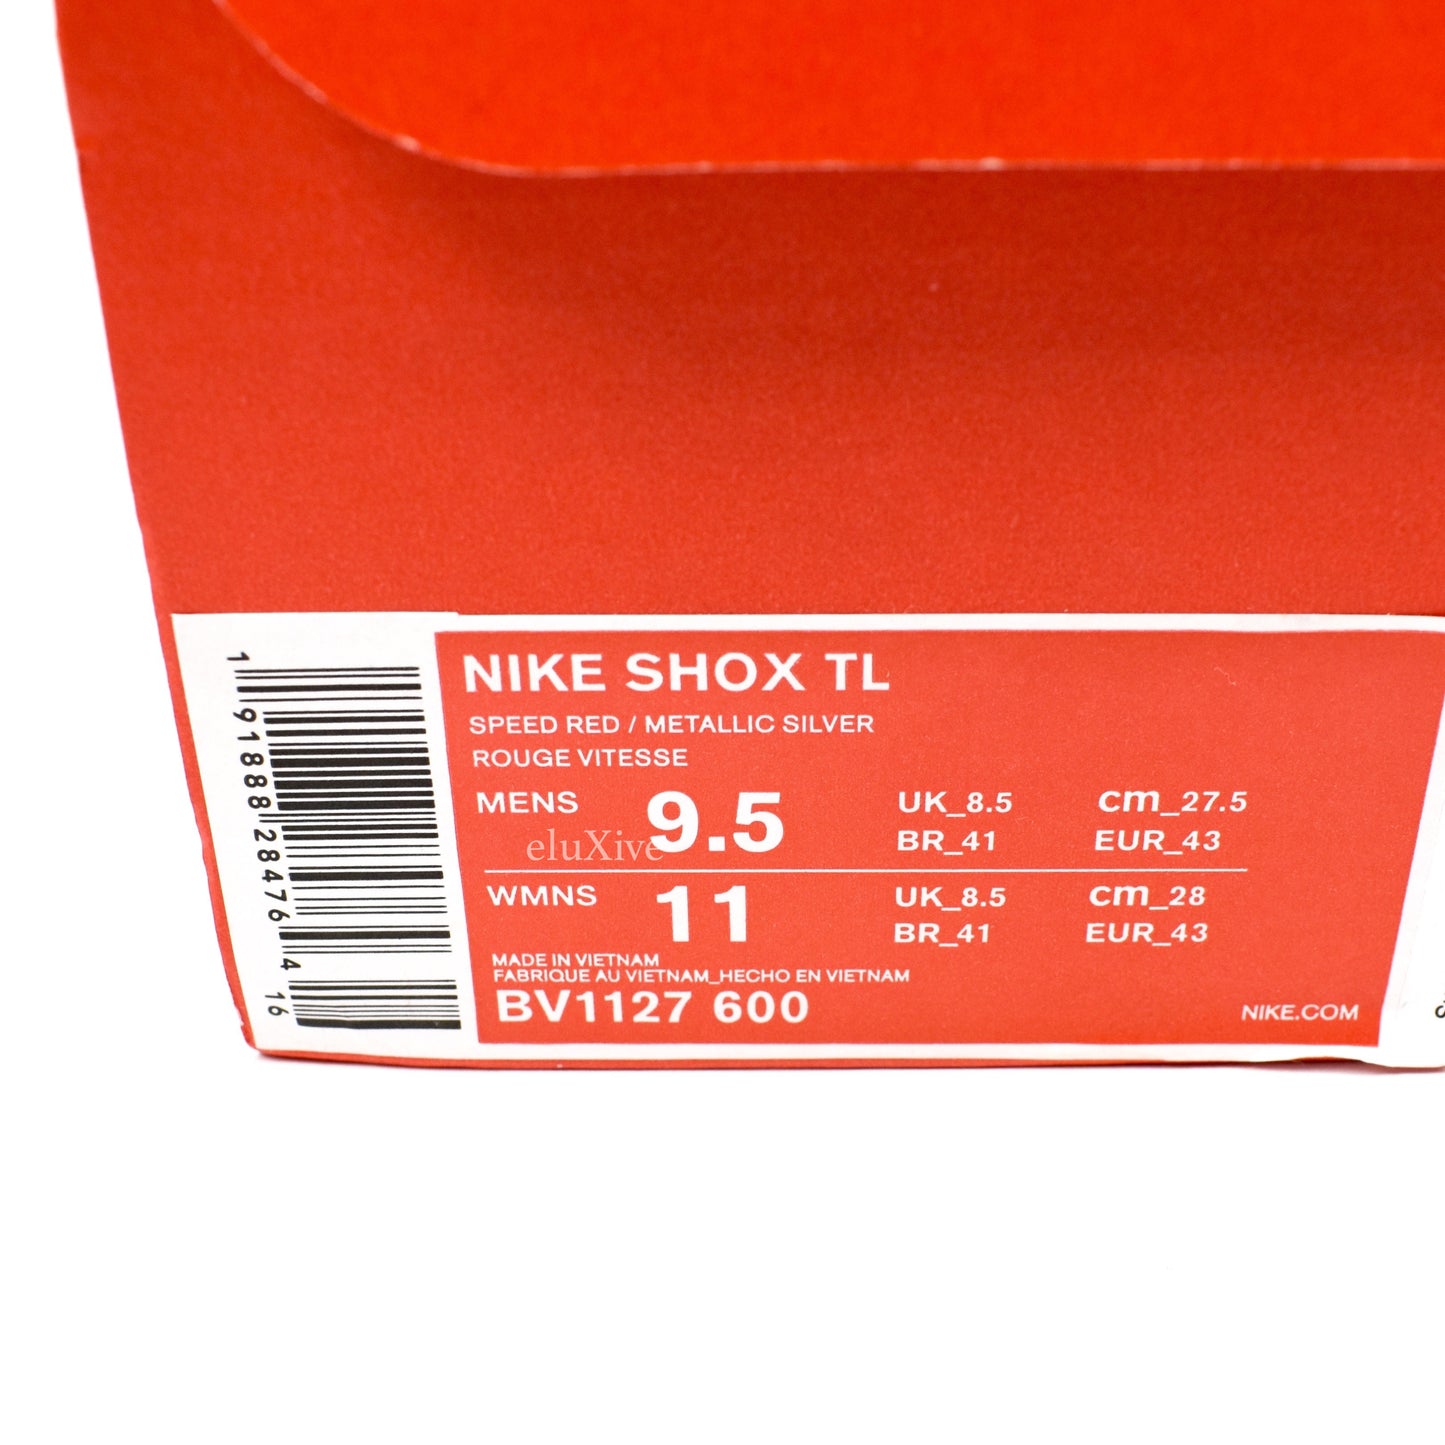 Nike - Shox TL (Speed Red / Metallic Silver)